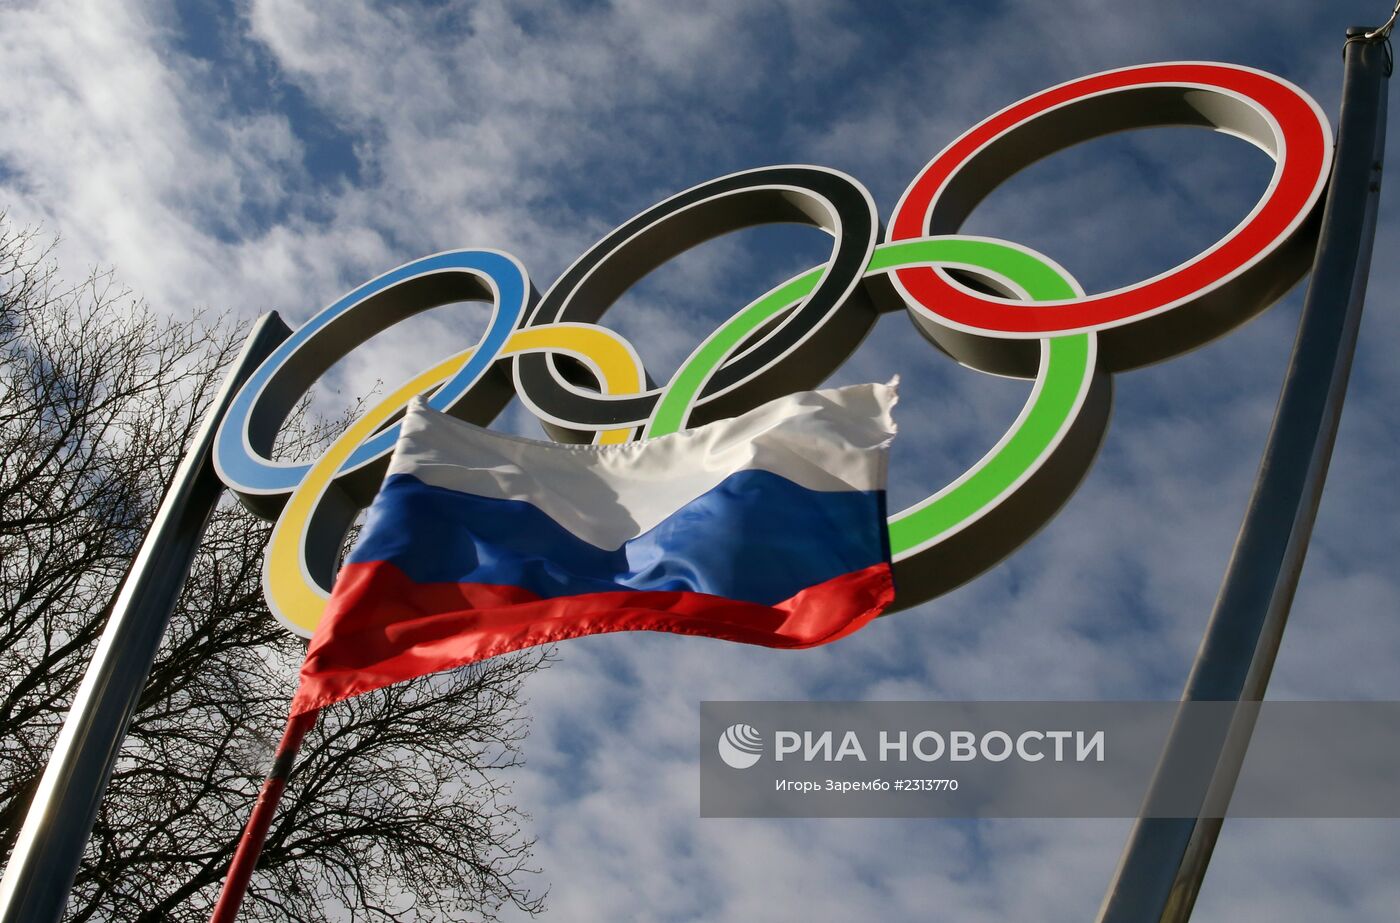 Олимпийские кольца установлены в Калининграде